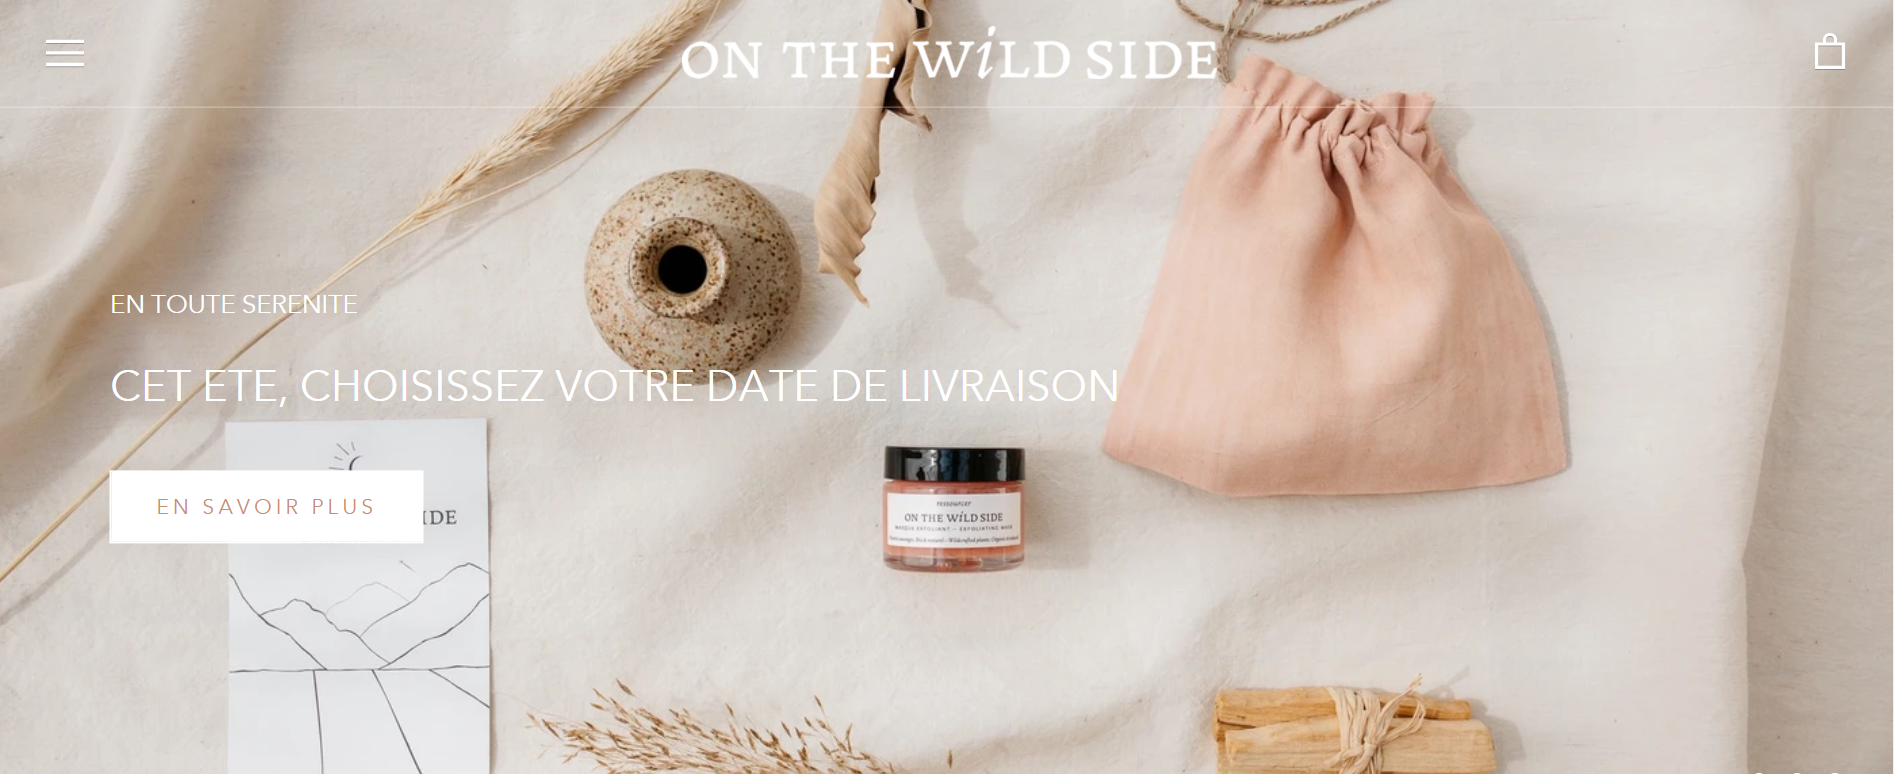 法国清洁美容品牌 On The Wild Side 融资50万欧元